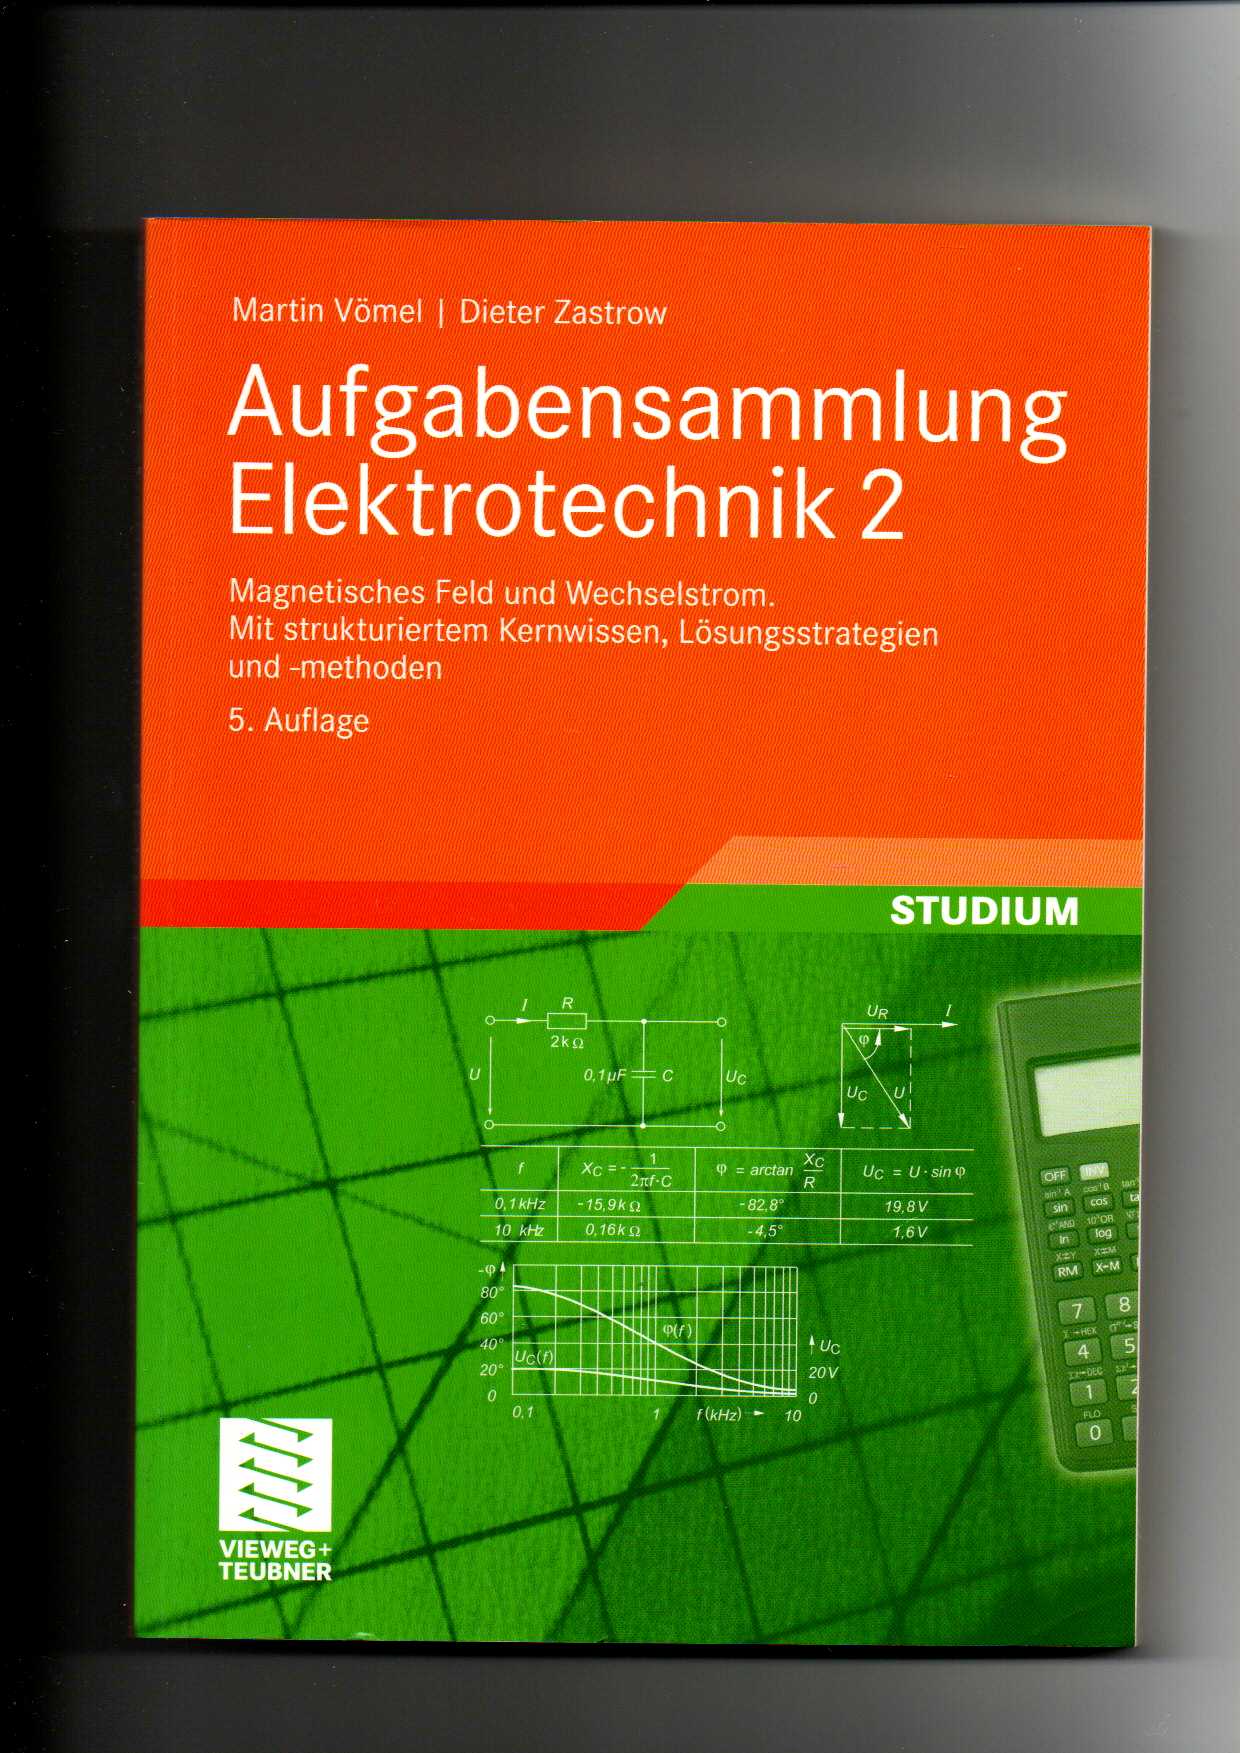 Martin Vömel, Dieter Zastrow, Aufgabensammlung Elektrotechnik 2 - Magnetisches Feld und Wechselstrom - Vömel, Martin und Dieter Zastrow